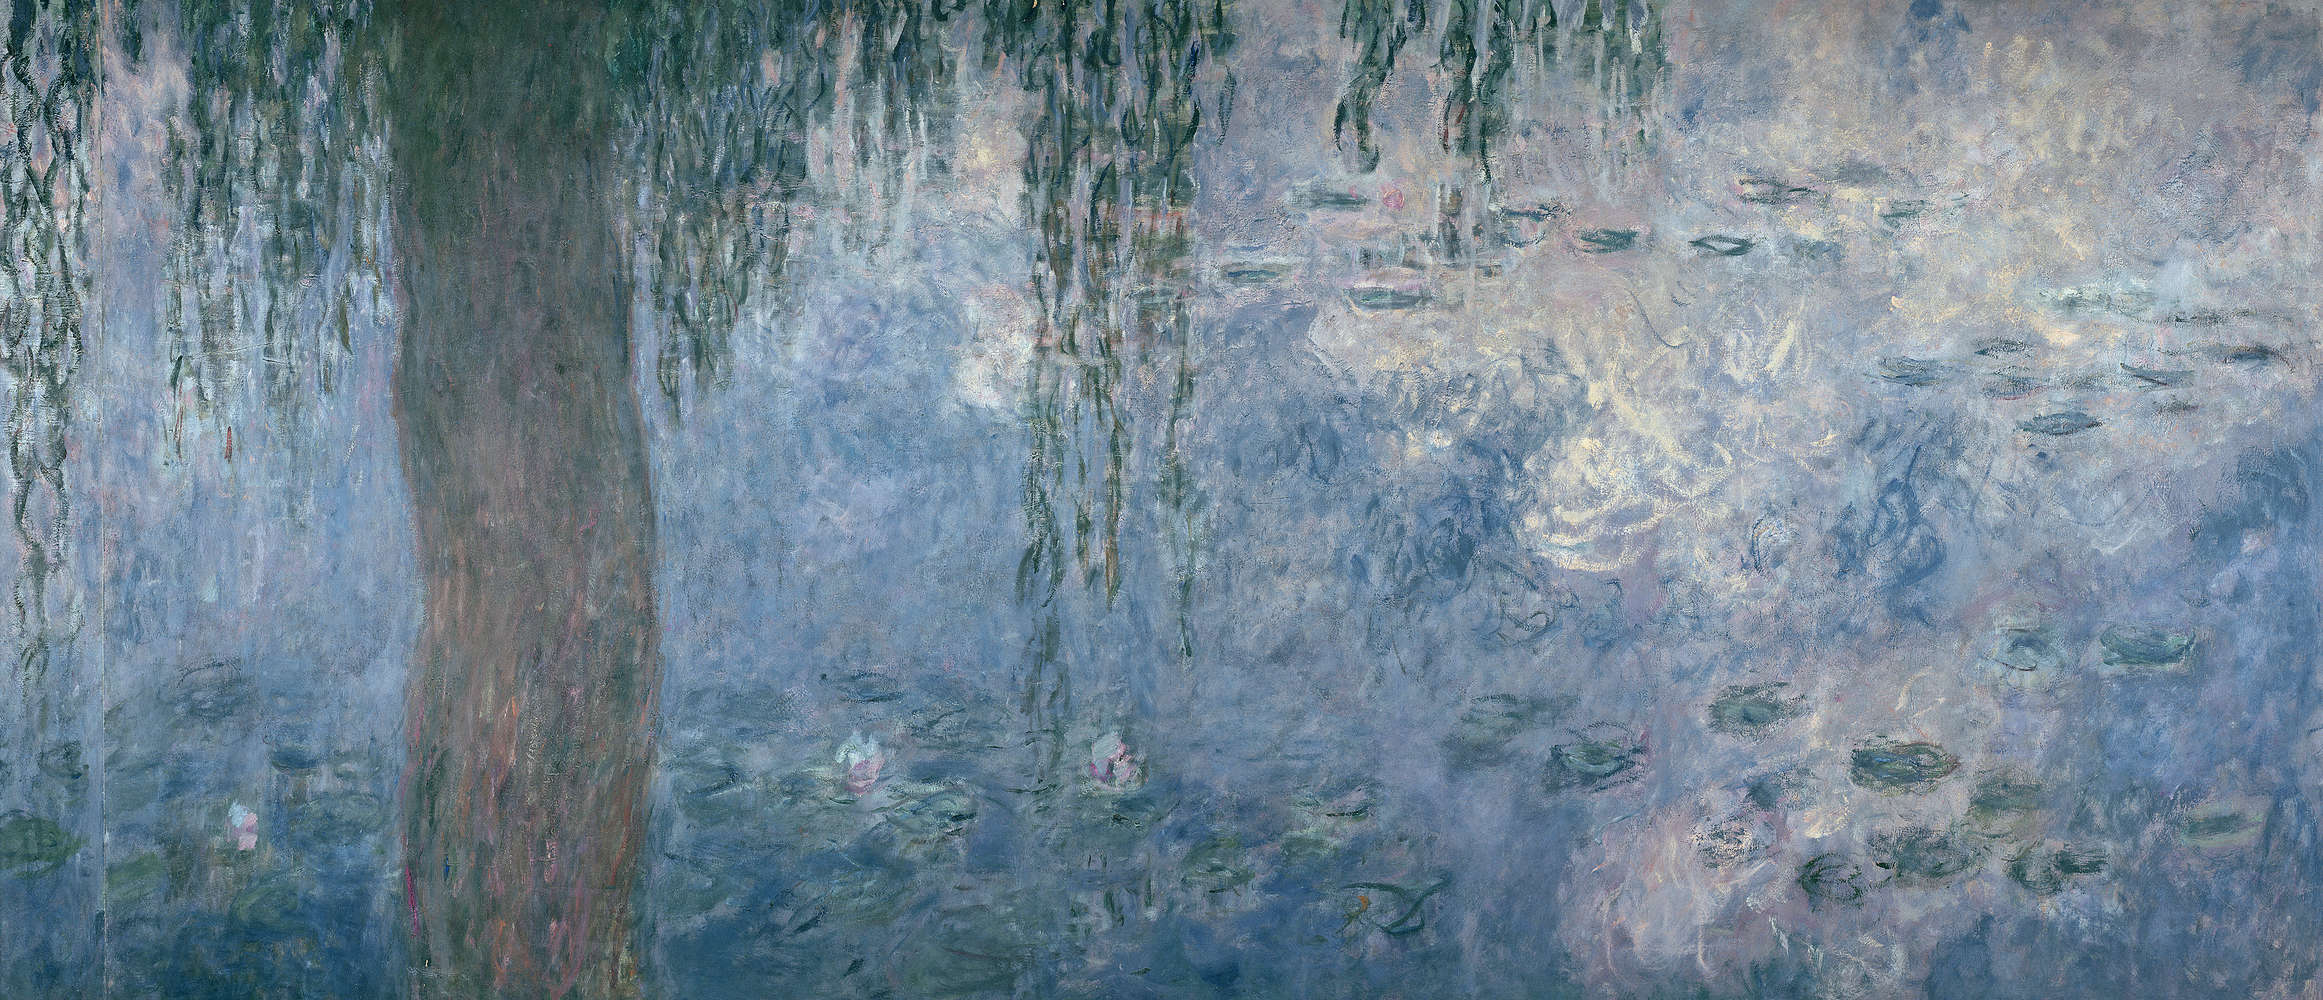             Waterlelies: ochtend met treurwilgen" muurschildering van Claude Monet
        